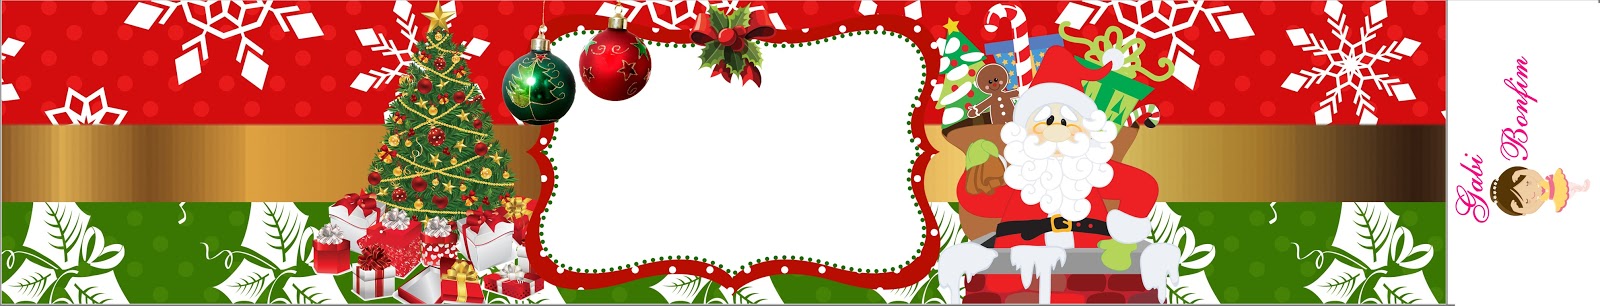 Fazendo a Propria Festa: Kit de Personalizados Tema : Natal ( Gratuito )